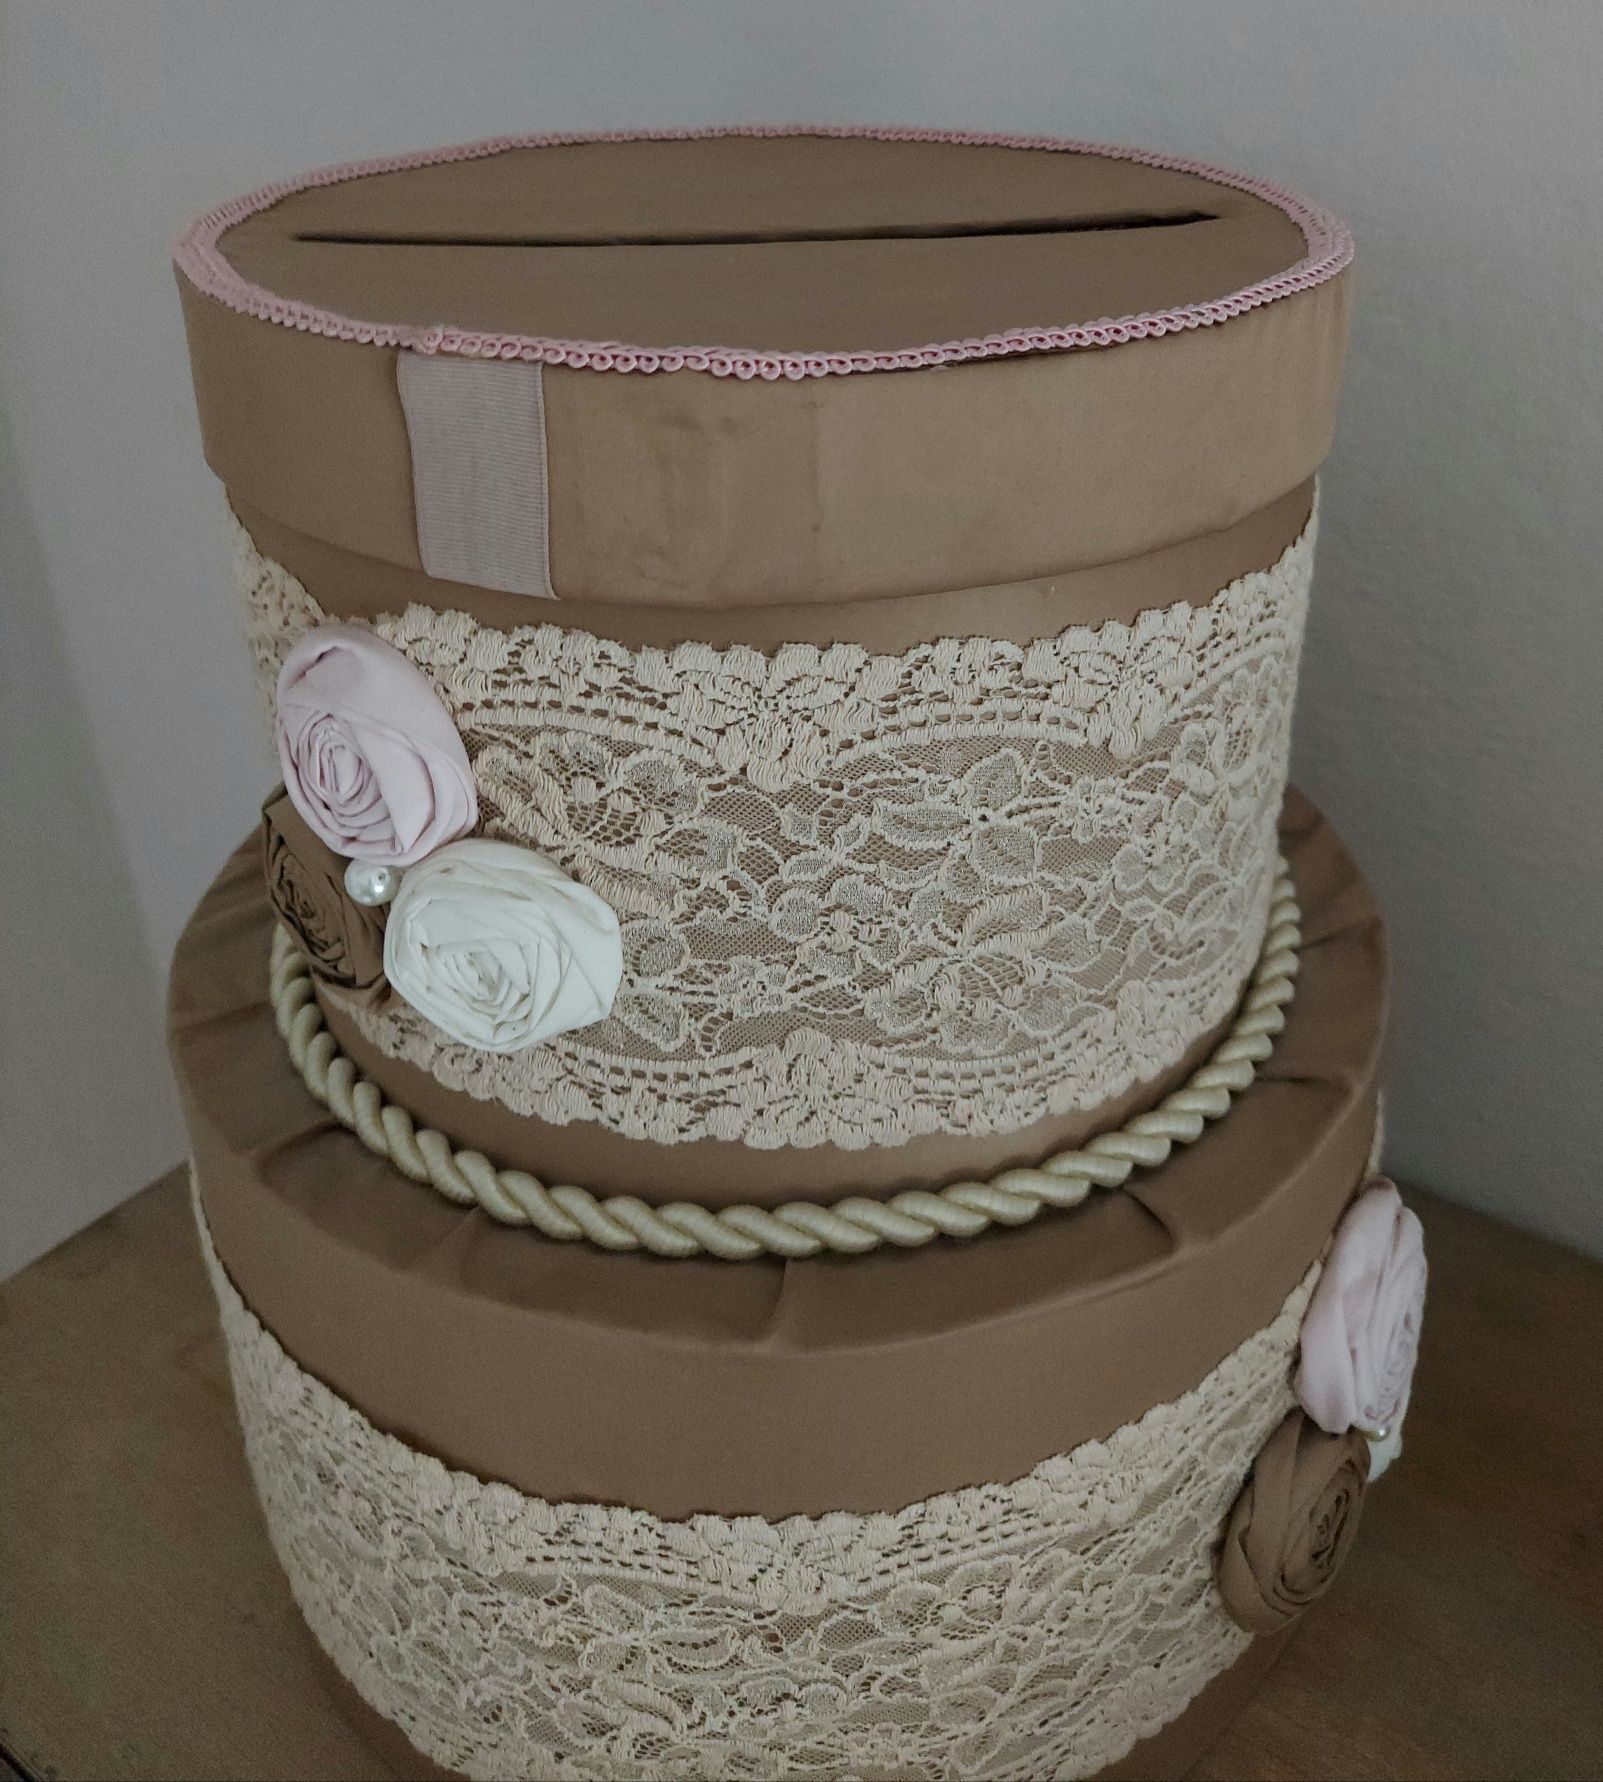 Cutie dar nunta - forma de tort